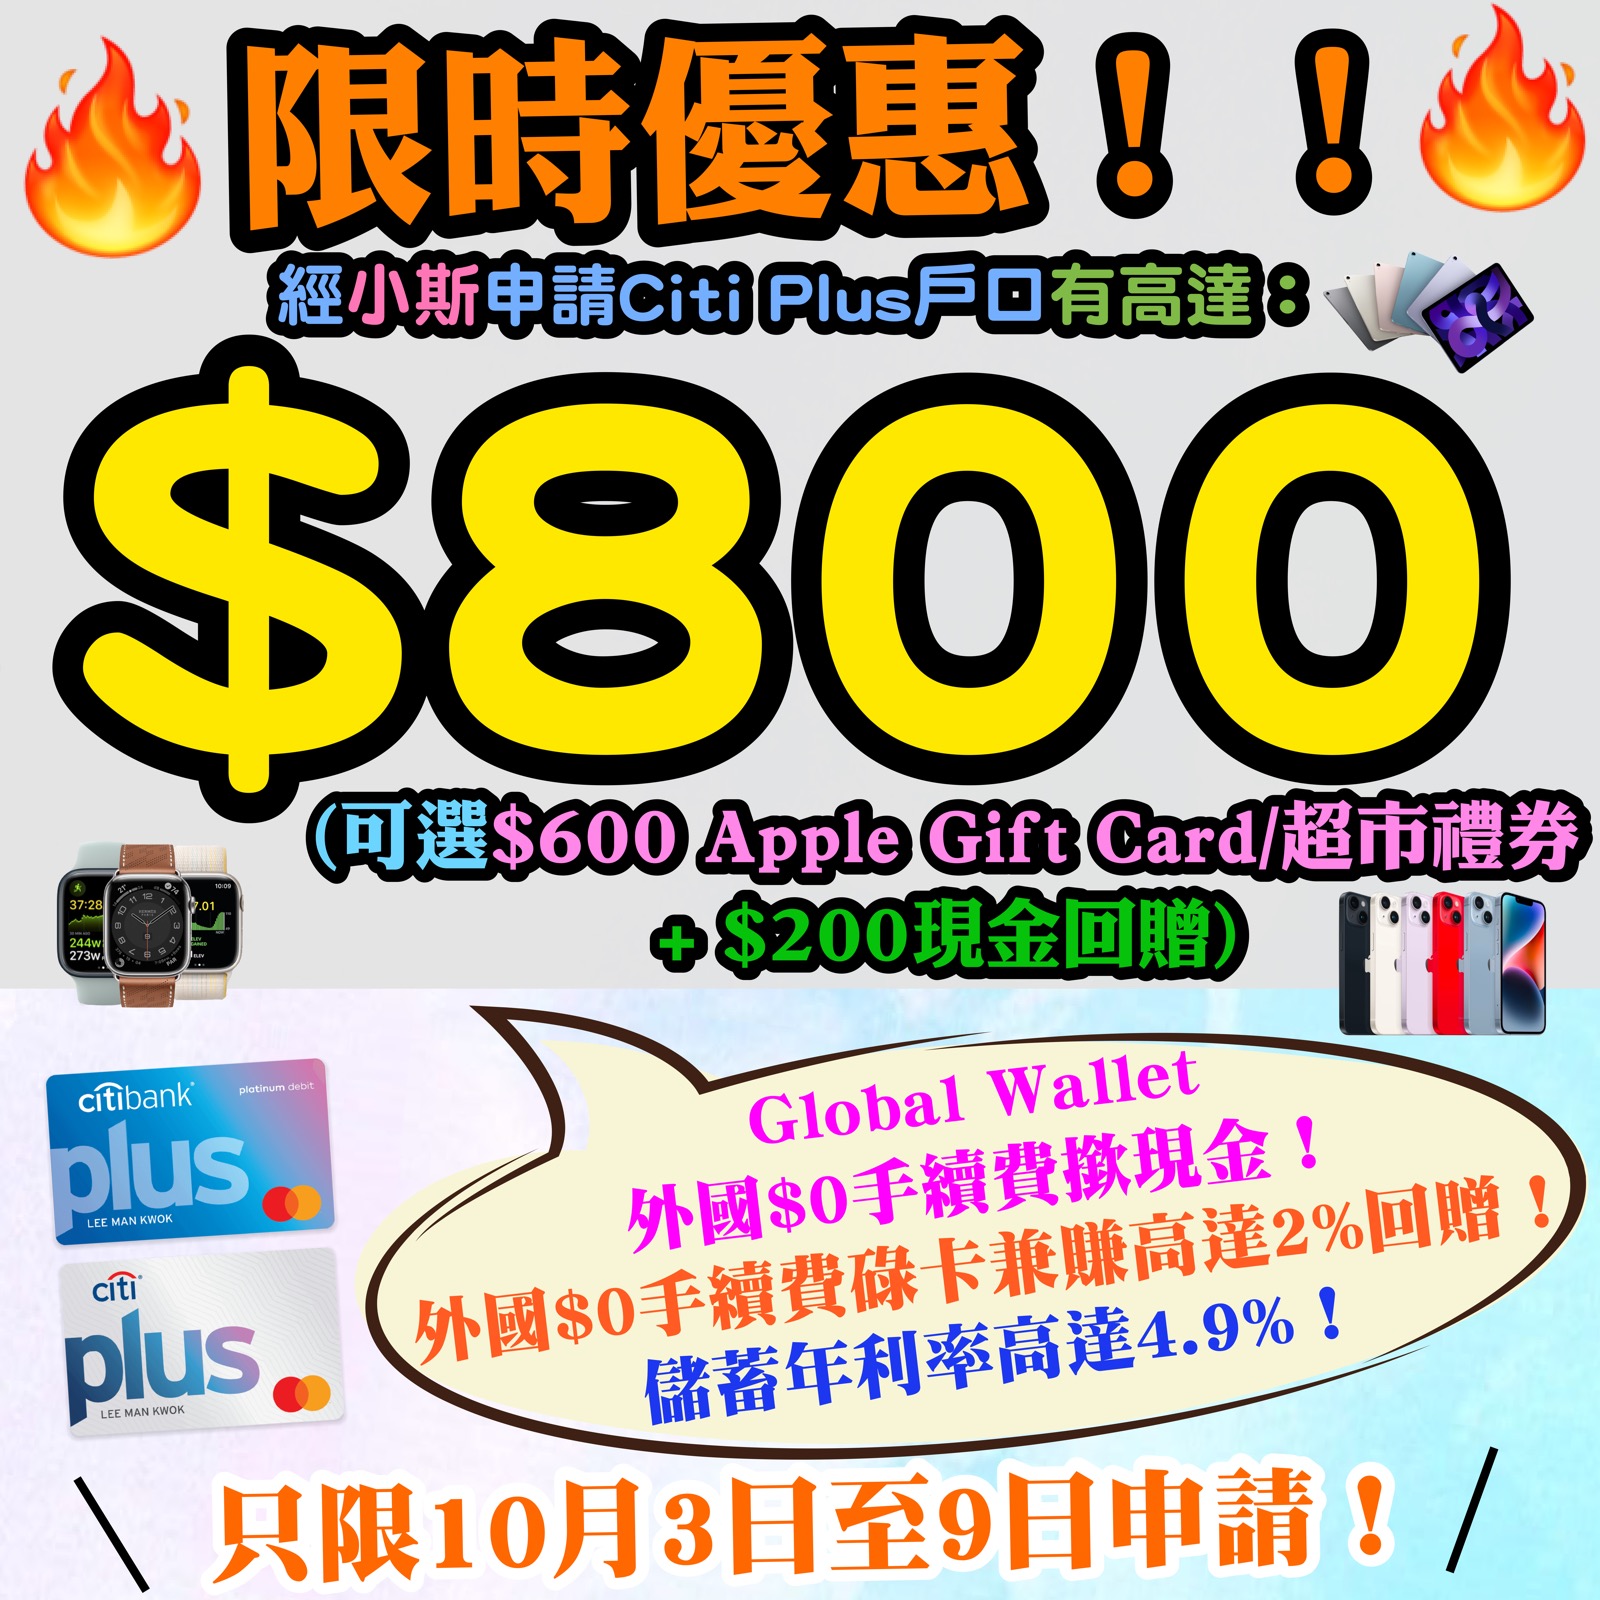 【Citi Plus限時優惠】經小斯申請Citi Plus戶口有額外$100！存入HK$10,000新資金再多HK$200現金回贈！